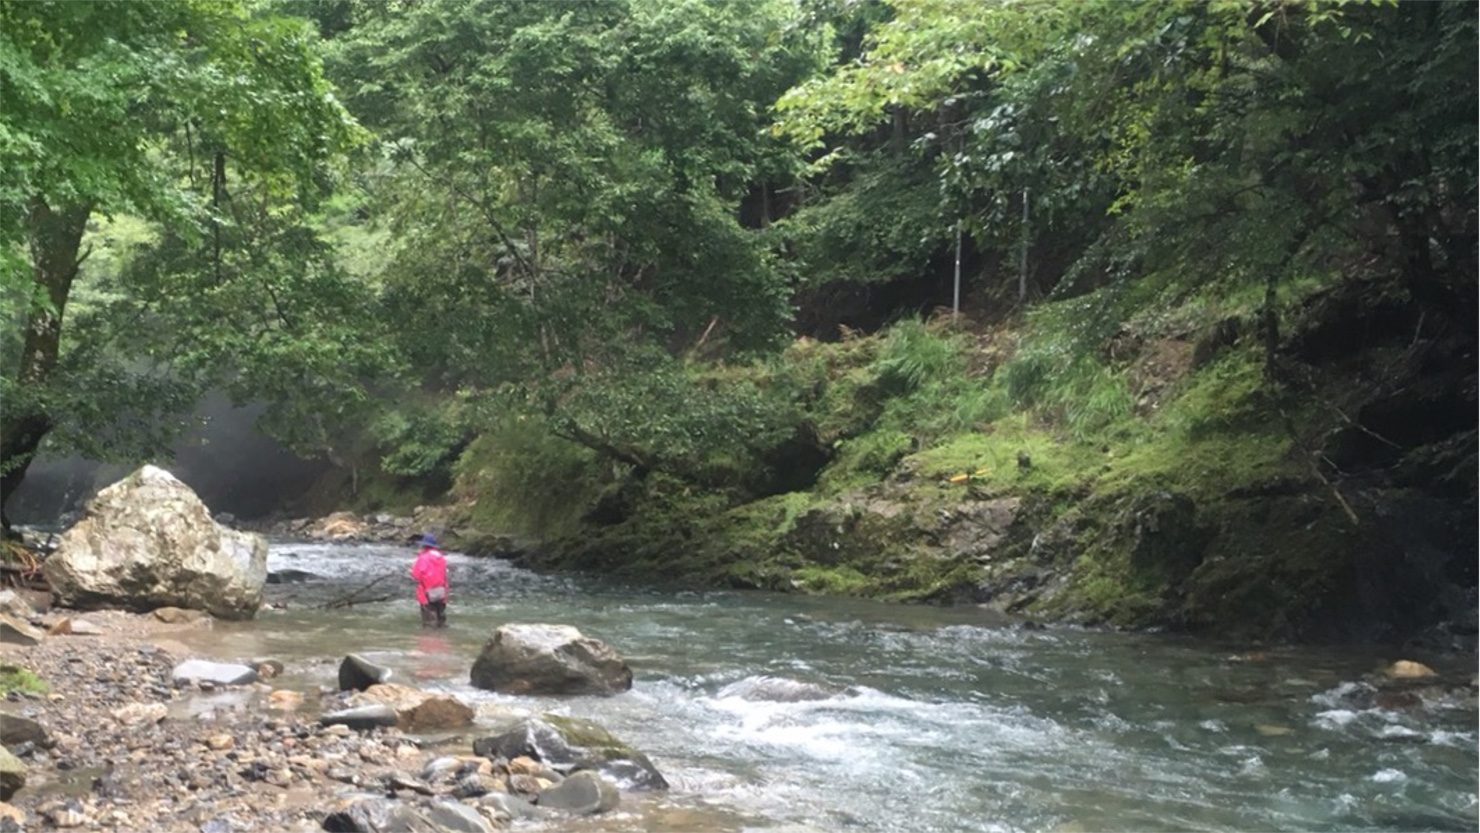 ホームズ 秋は渓流釣りに行こう 関西の渓流釣りスポットで季節の景色を楽しむ 暮らし方から物件探し